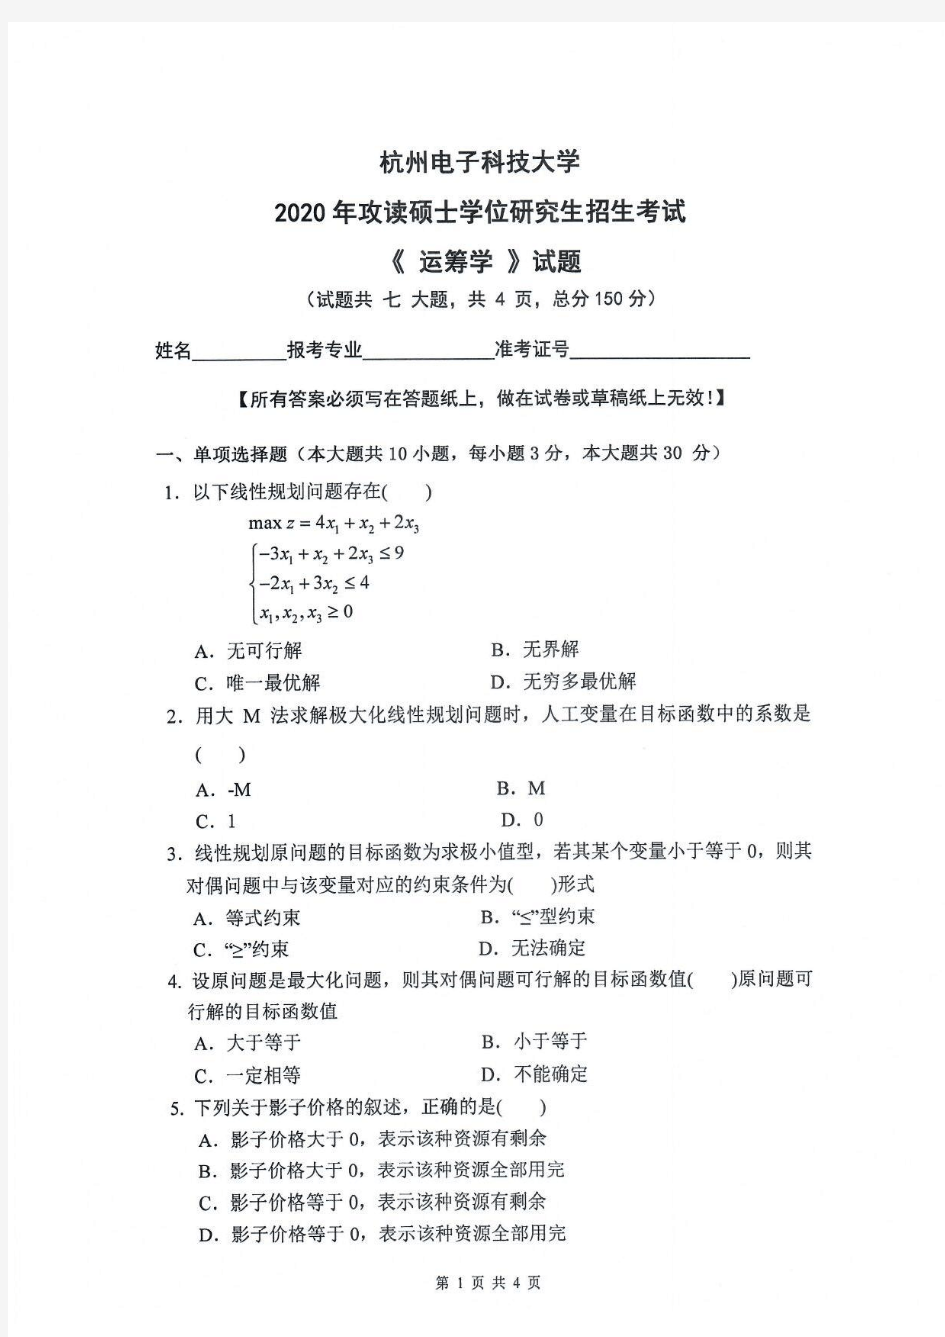 运筹学-杭州电子科技大学2020年攻读硕士学位研究生招生考试试题